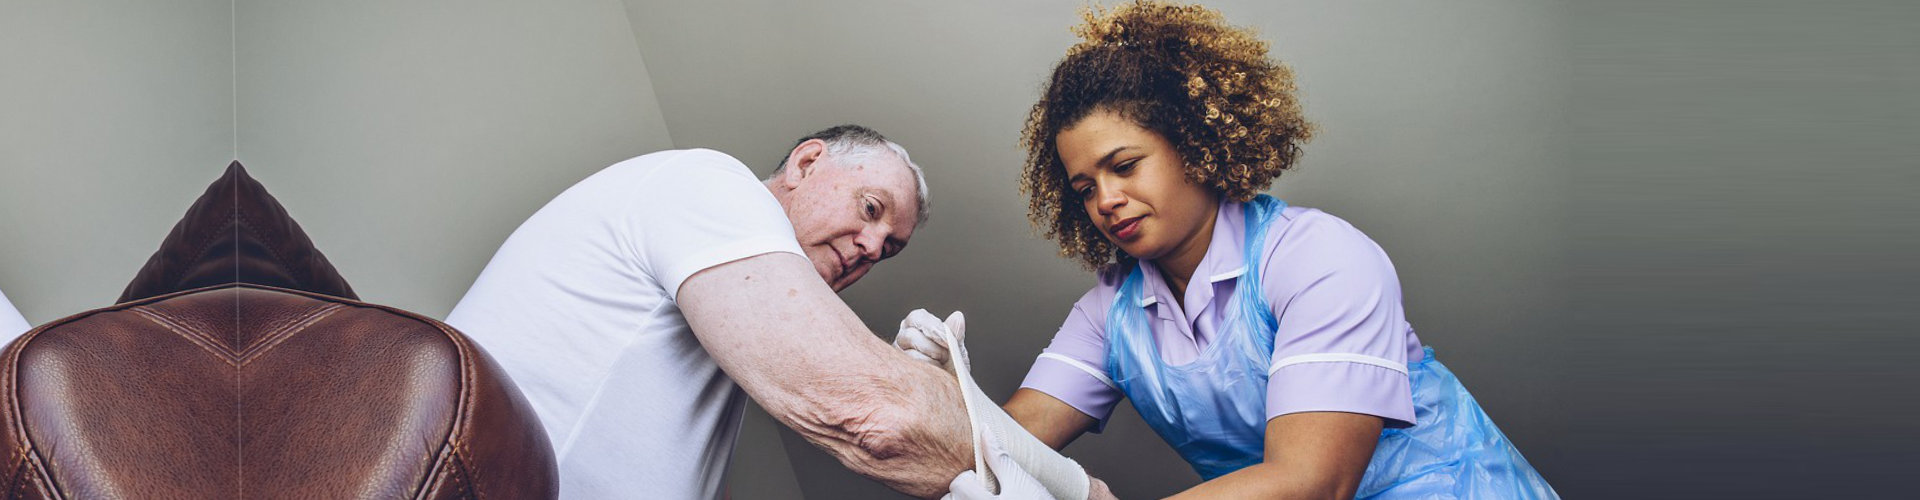 nurse putting bandage on senior man's arm